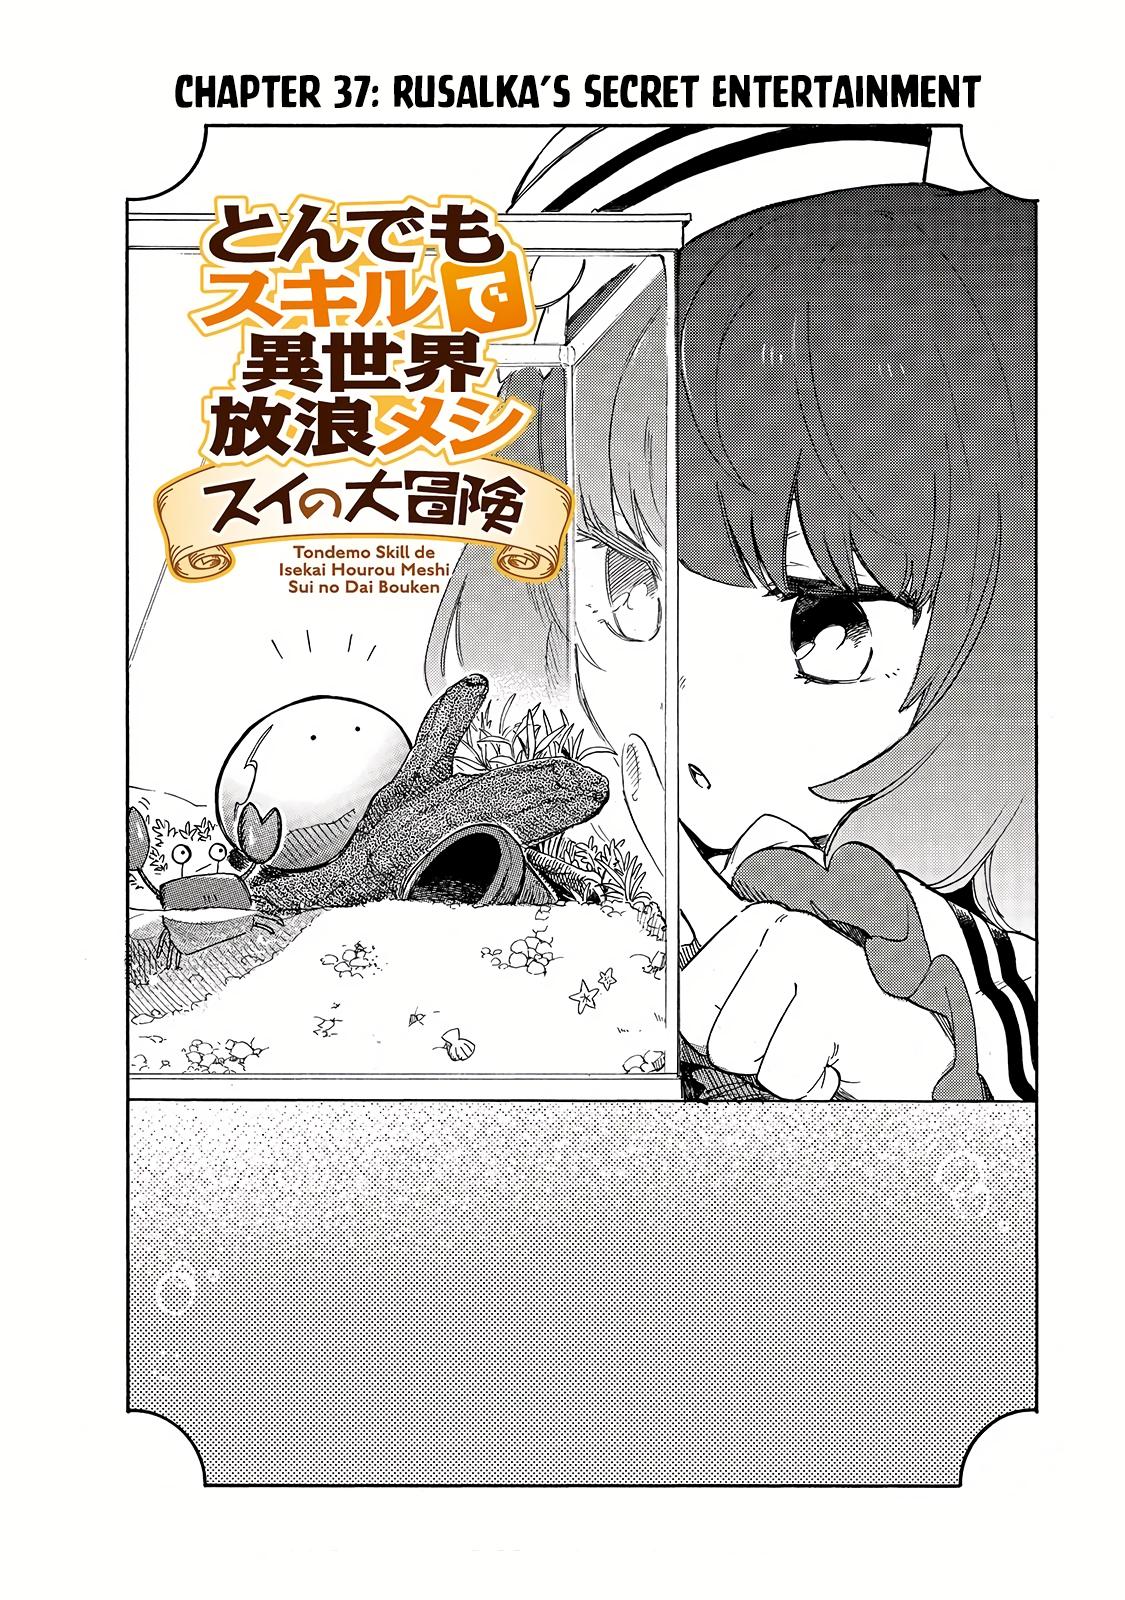 Tondemo Skill de Isekai Hourou Meshi: Sui no Daibouken Ch.37 Page 3 -  Mangago